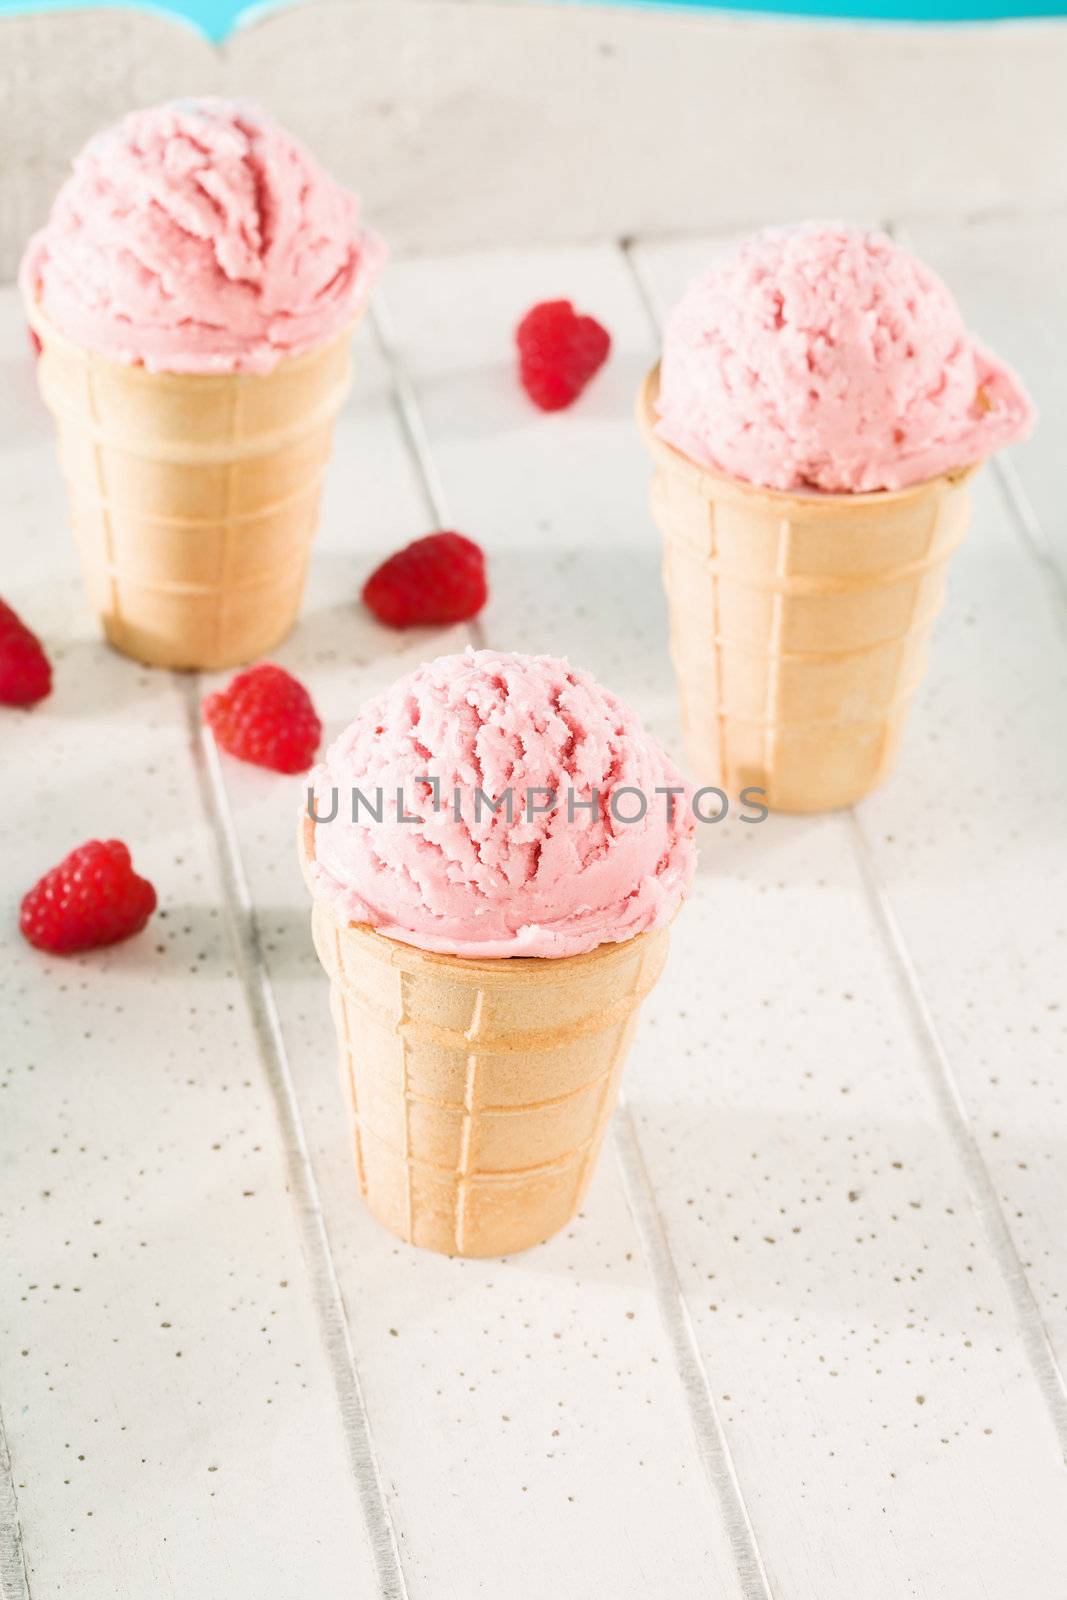 some raspberry ice cream cones by RobStark